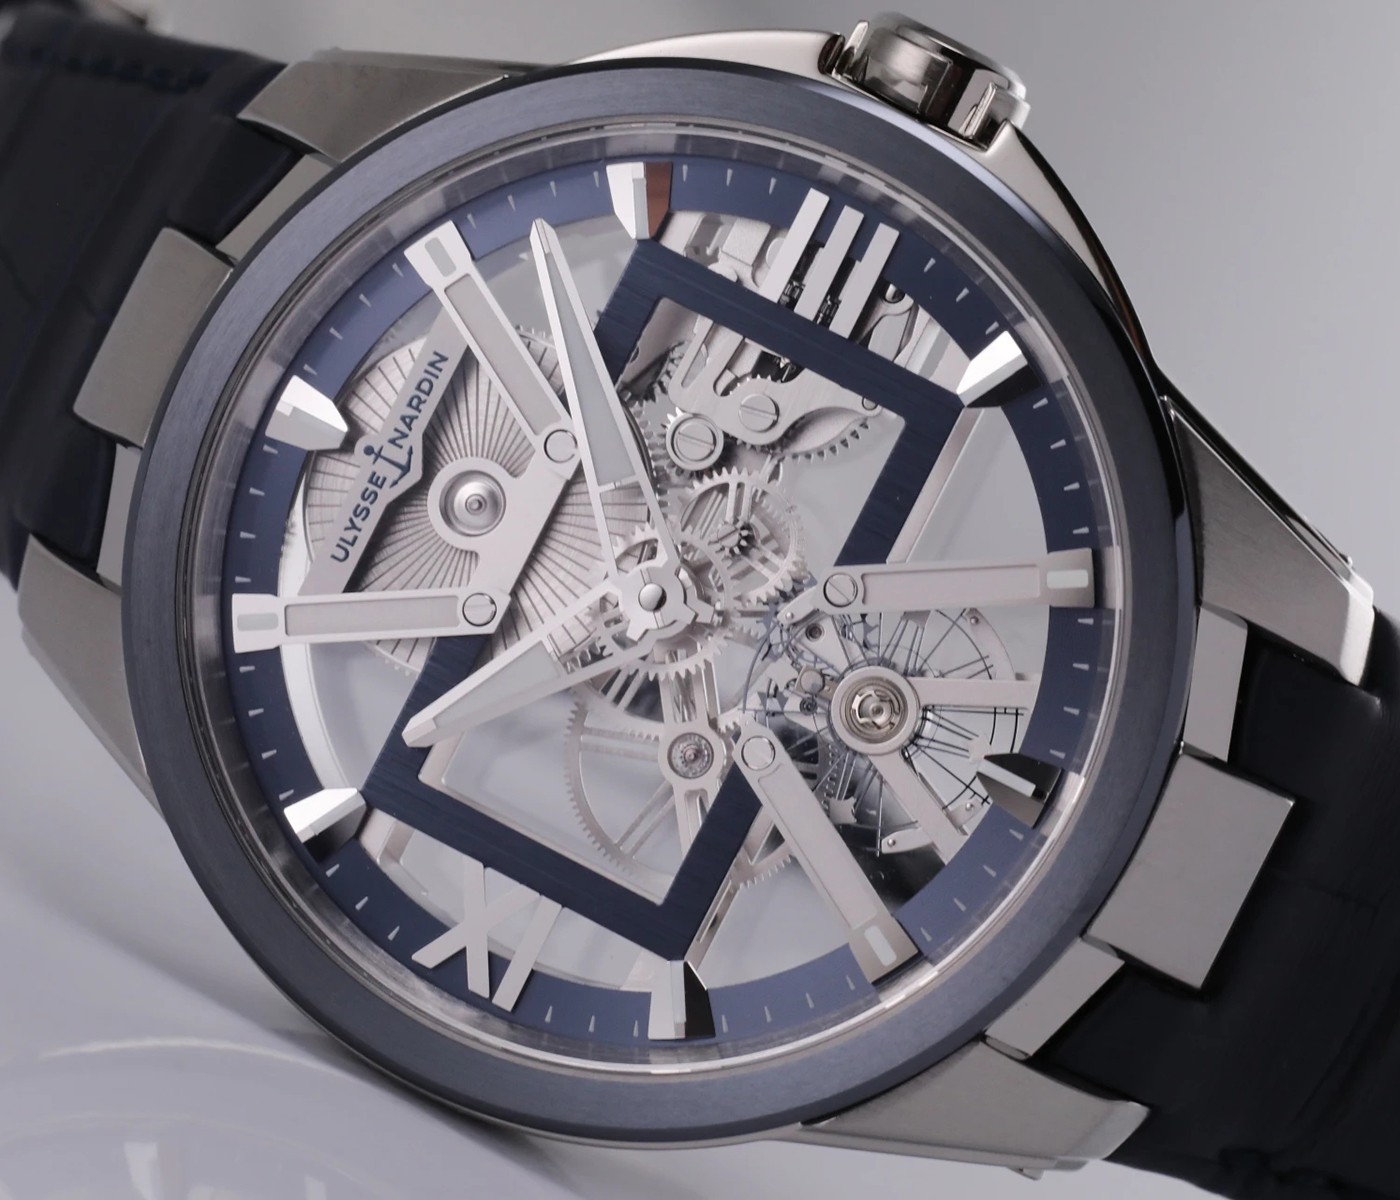 臣则忠|百达翡丽手表并没有批量生产的专业技术，雅典表批量生产了